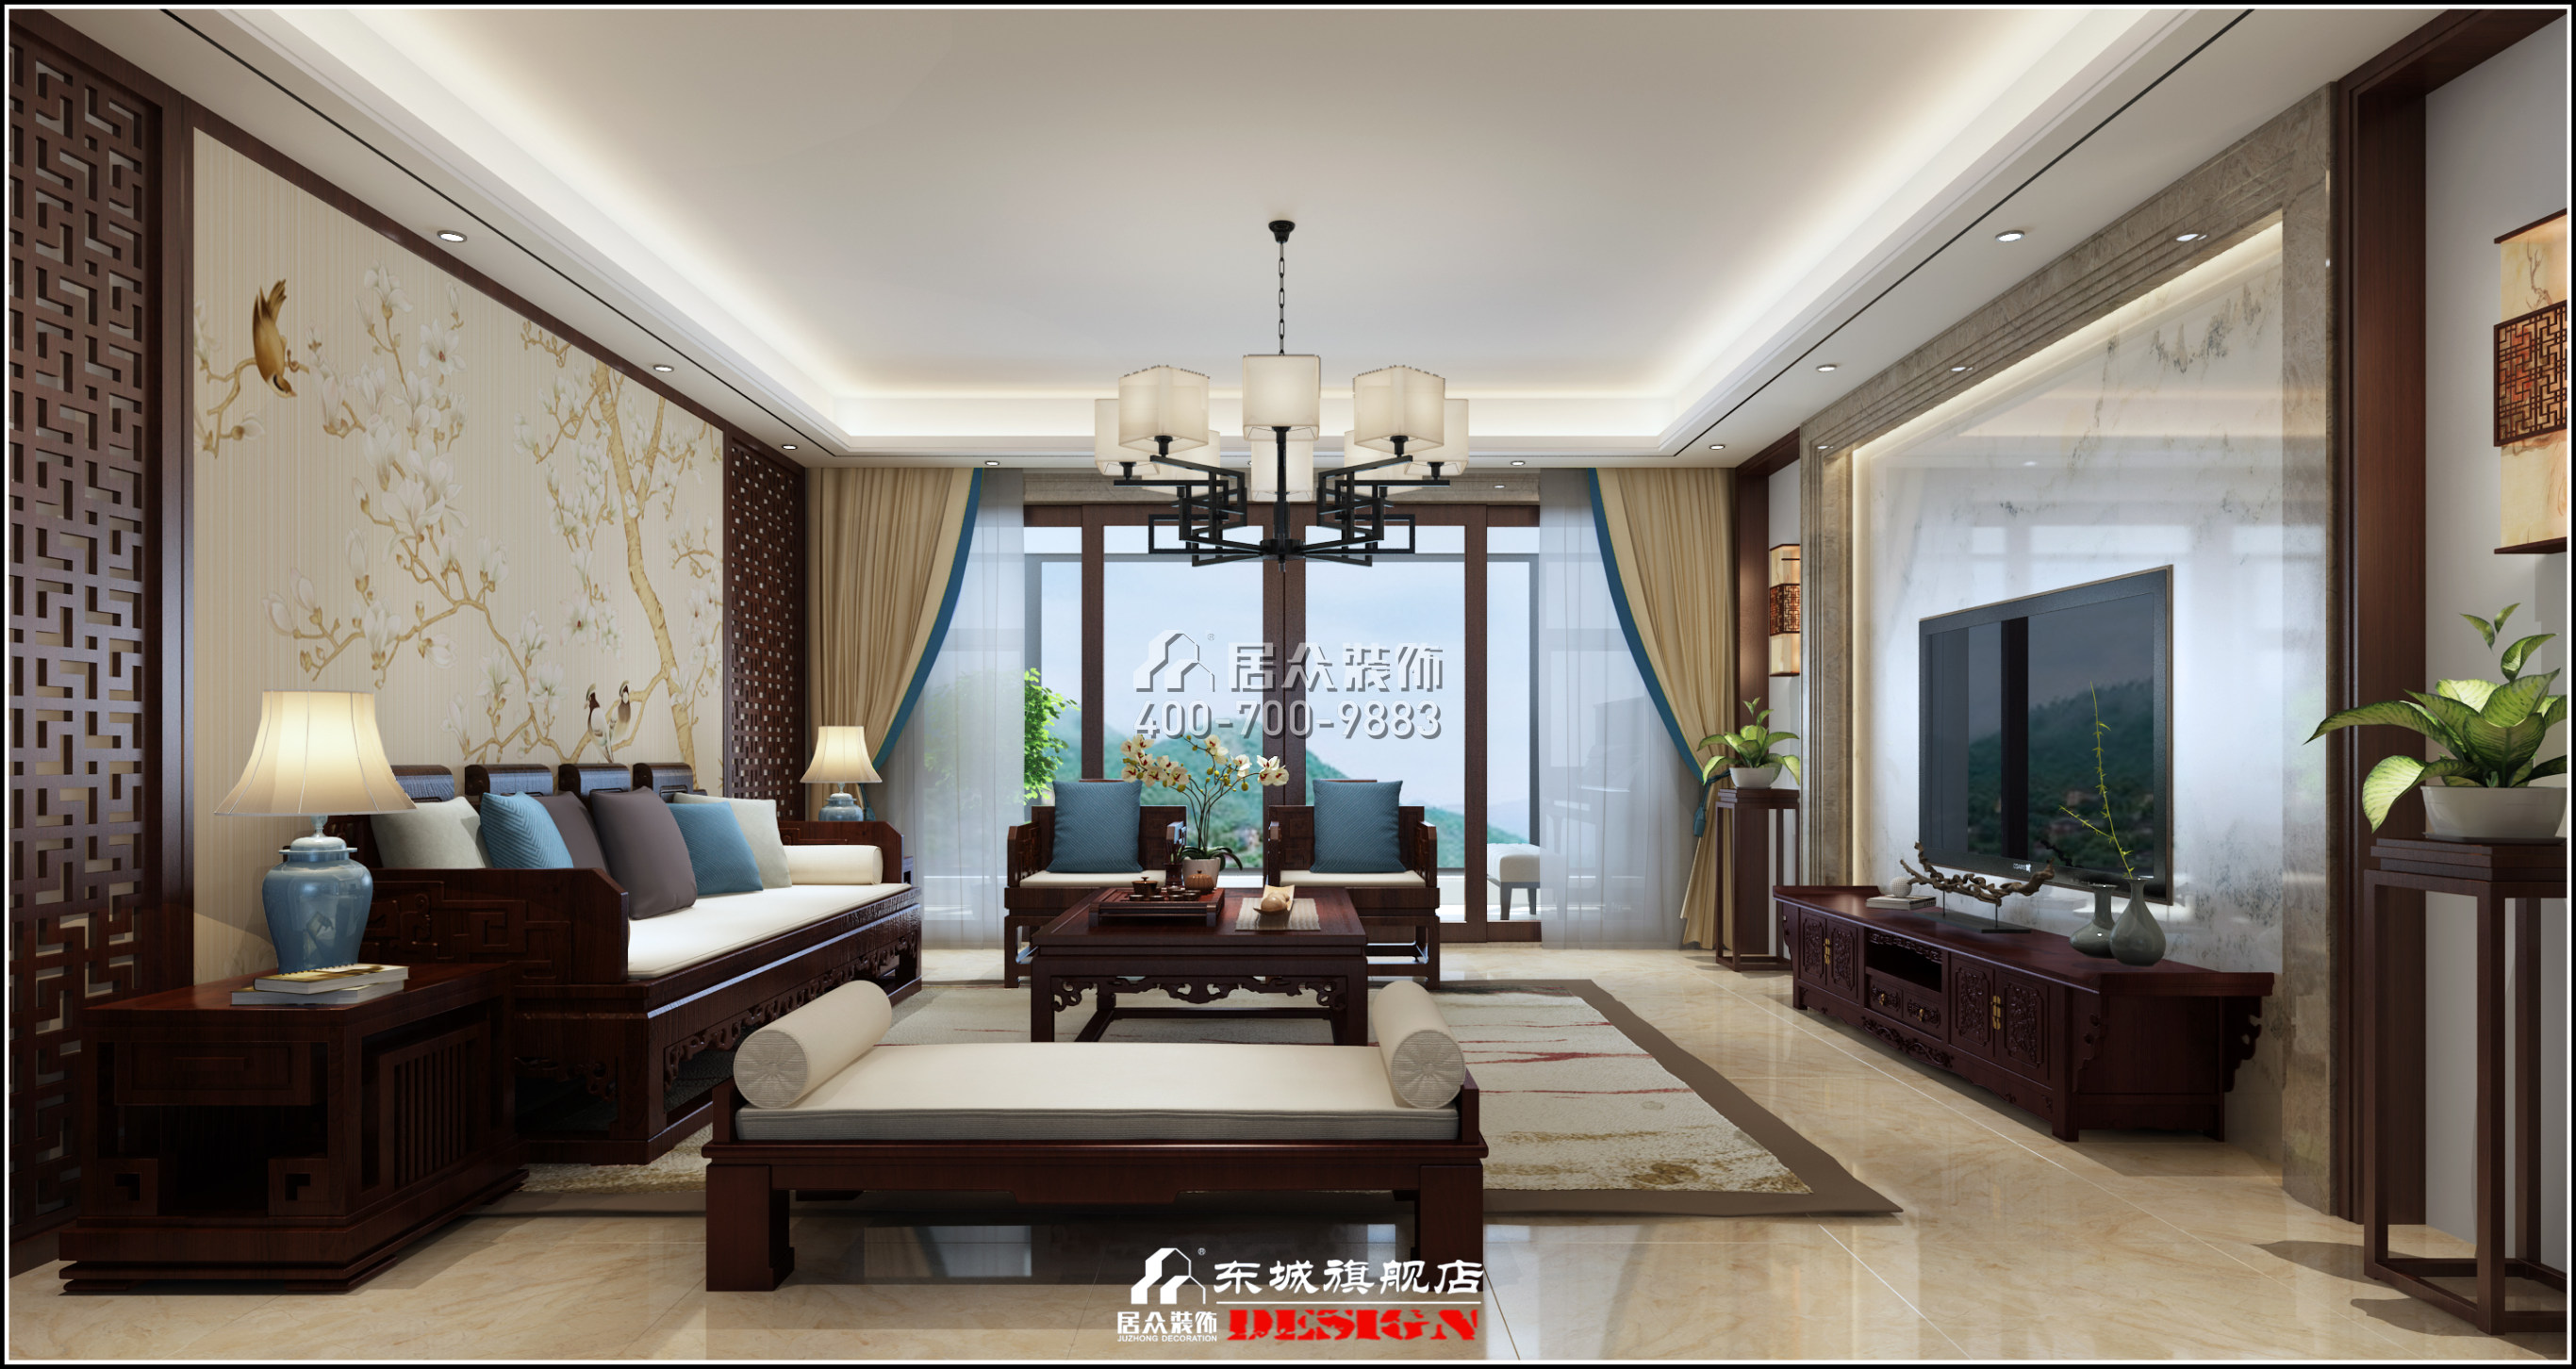 京武浪琴山275平方米中式风格平层户型客厅装修效果图